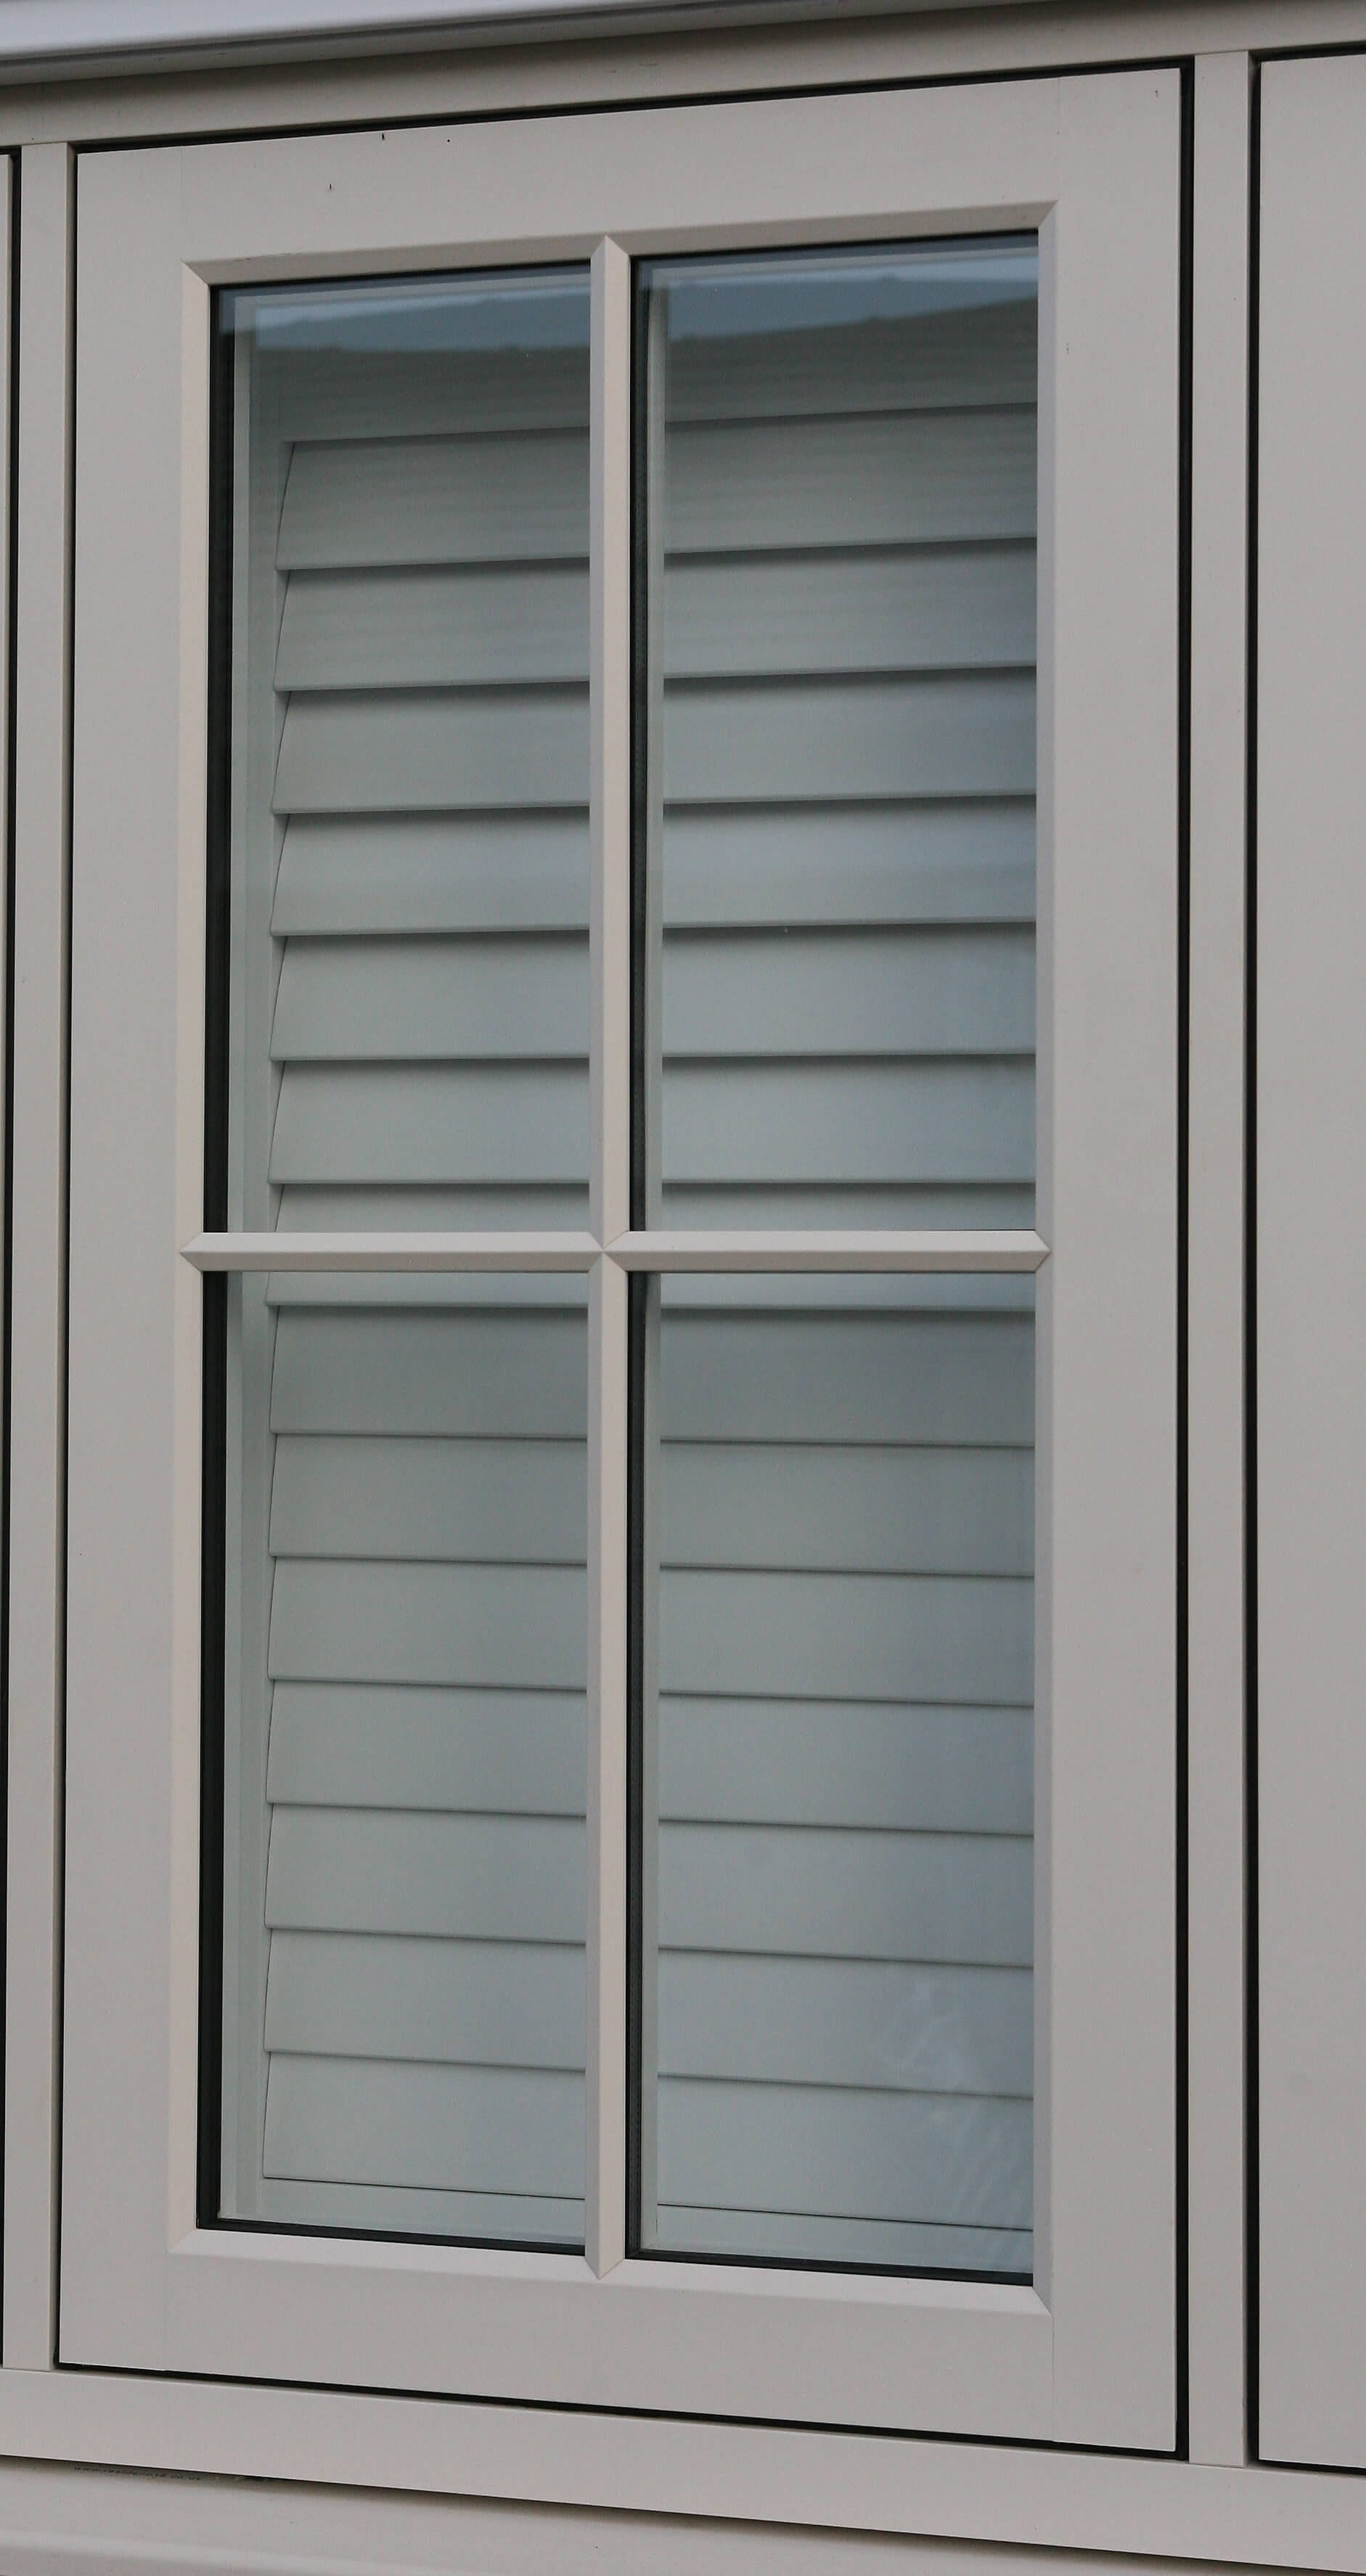 wooden shutters blinds